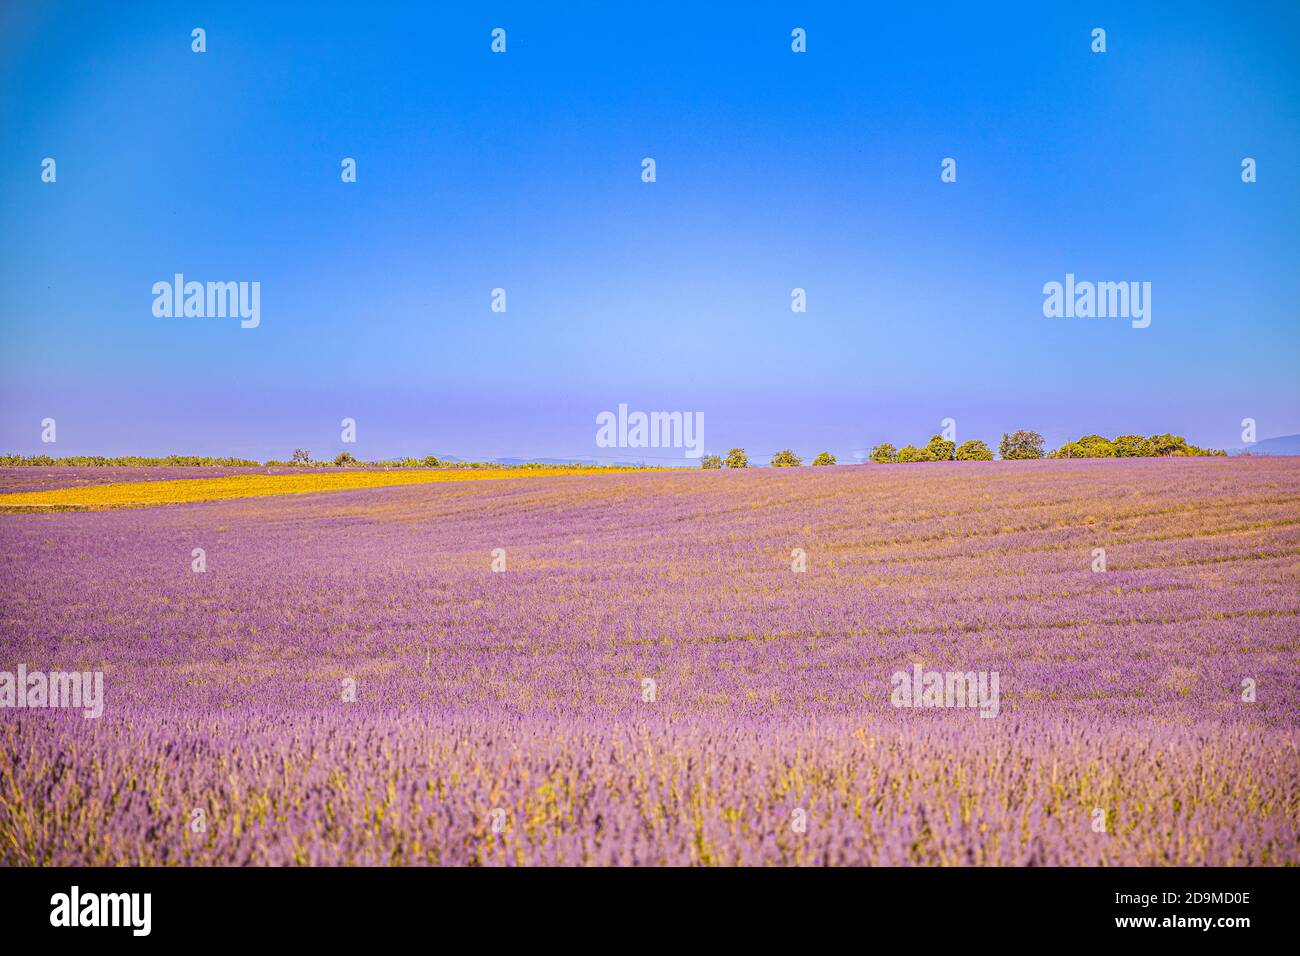 Wunderschöne Naturlandschaft, herrliche Landschaft mit blühenden Lavendelblüten. Moody Himmel, Pastellfarben auf hellen Landschaft Blick. Blumenpanorama Stockfoto